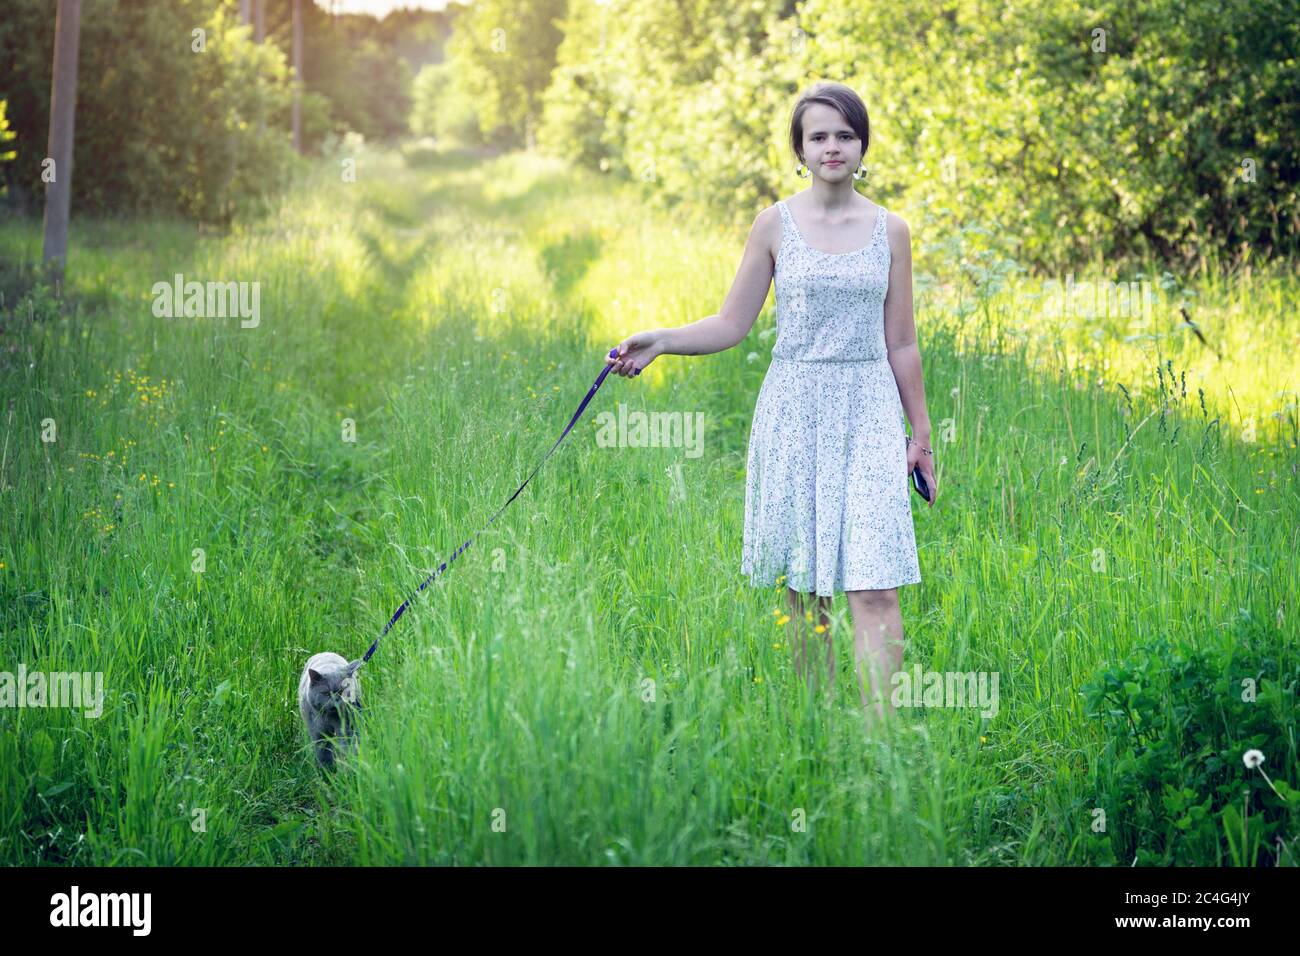 Une adolescente marchant avec un chat mâle à cheveux courts britannique sur une laisse sur l'herbe verte à la campagne, le jour d'été ensoleillé Banque D'Images